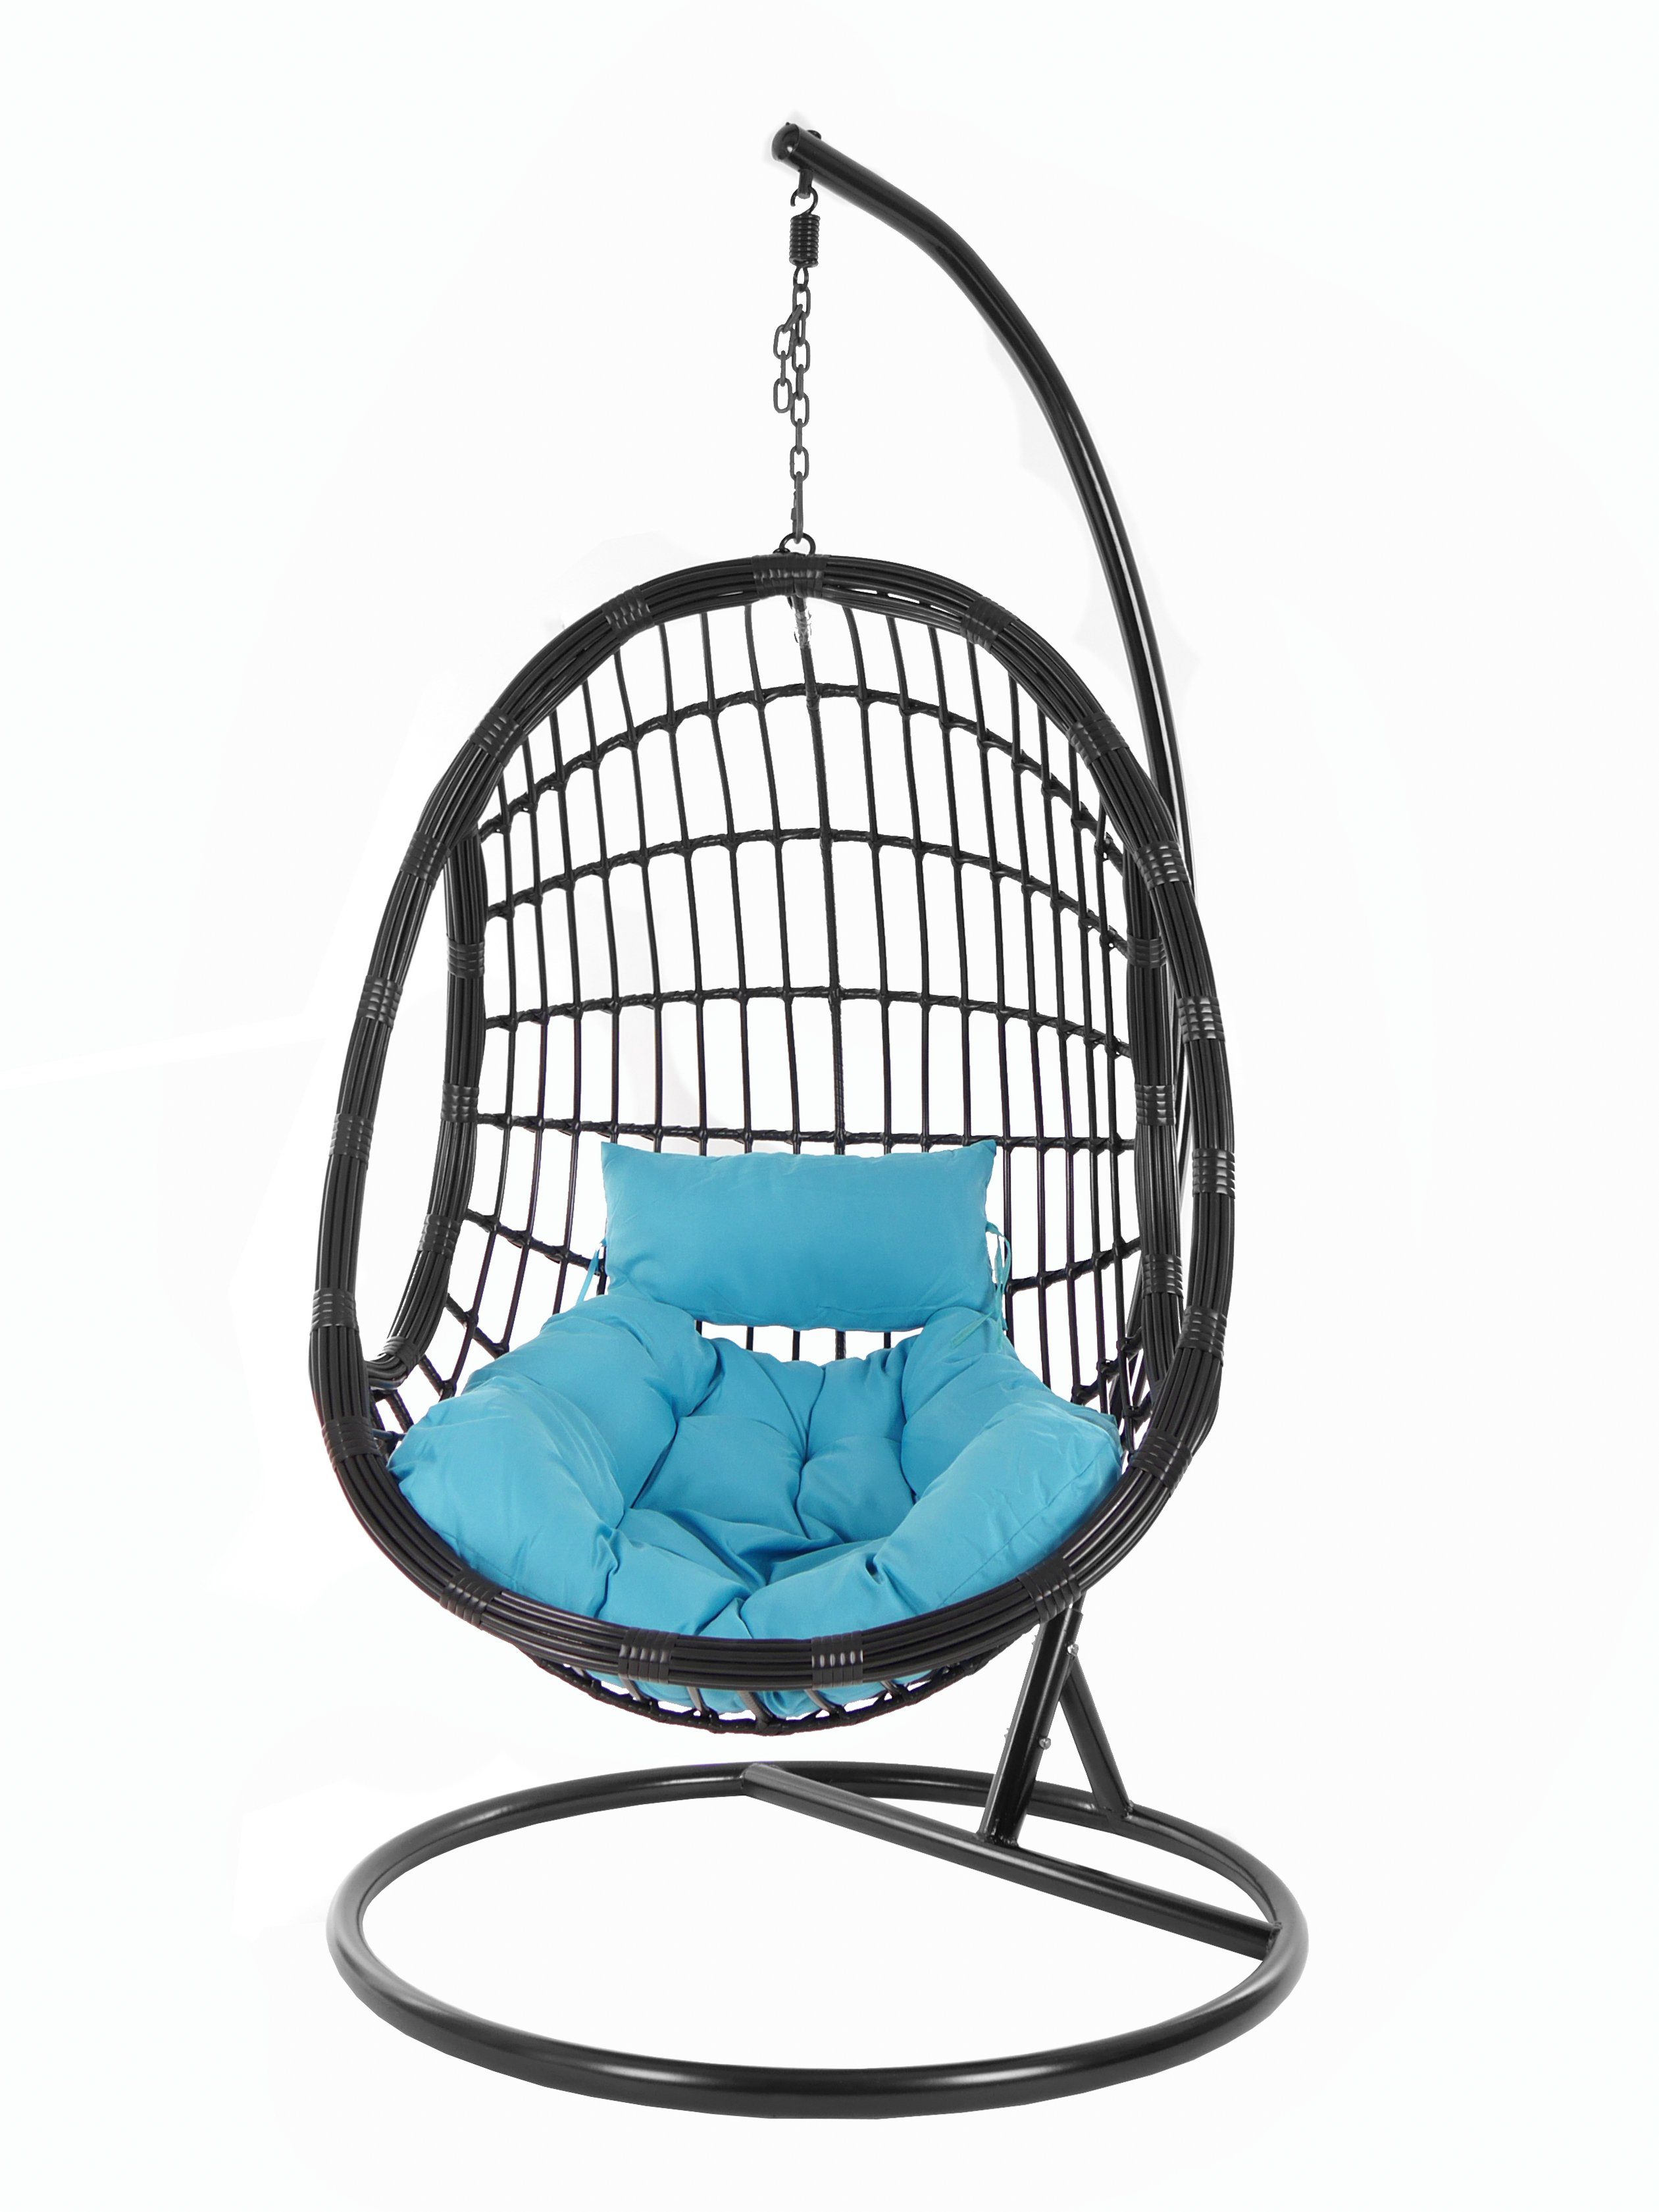 KIDEO Hängesessel PALMANOVA black, Swing Kissen, schwarz, Gestell hellblau Chair, (5050 Schwebesessel, Loungemöbel, edles Design skyblue) und mit Hängesessel